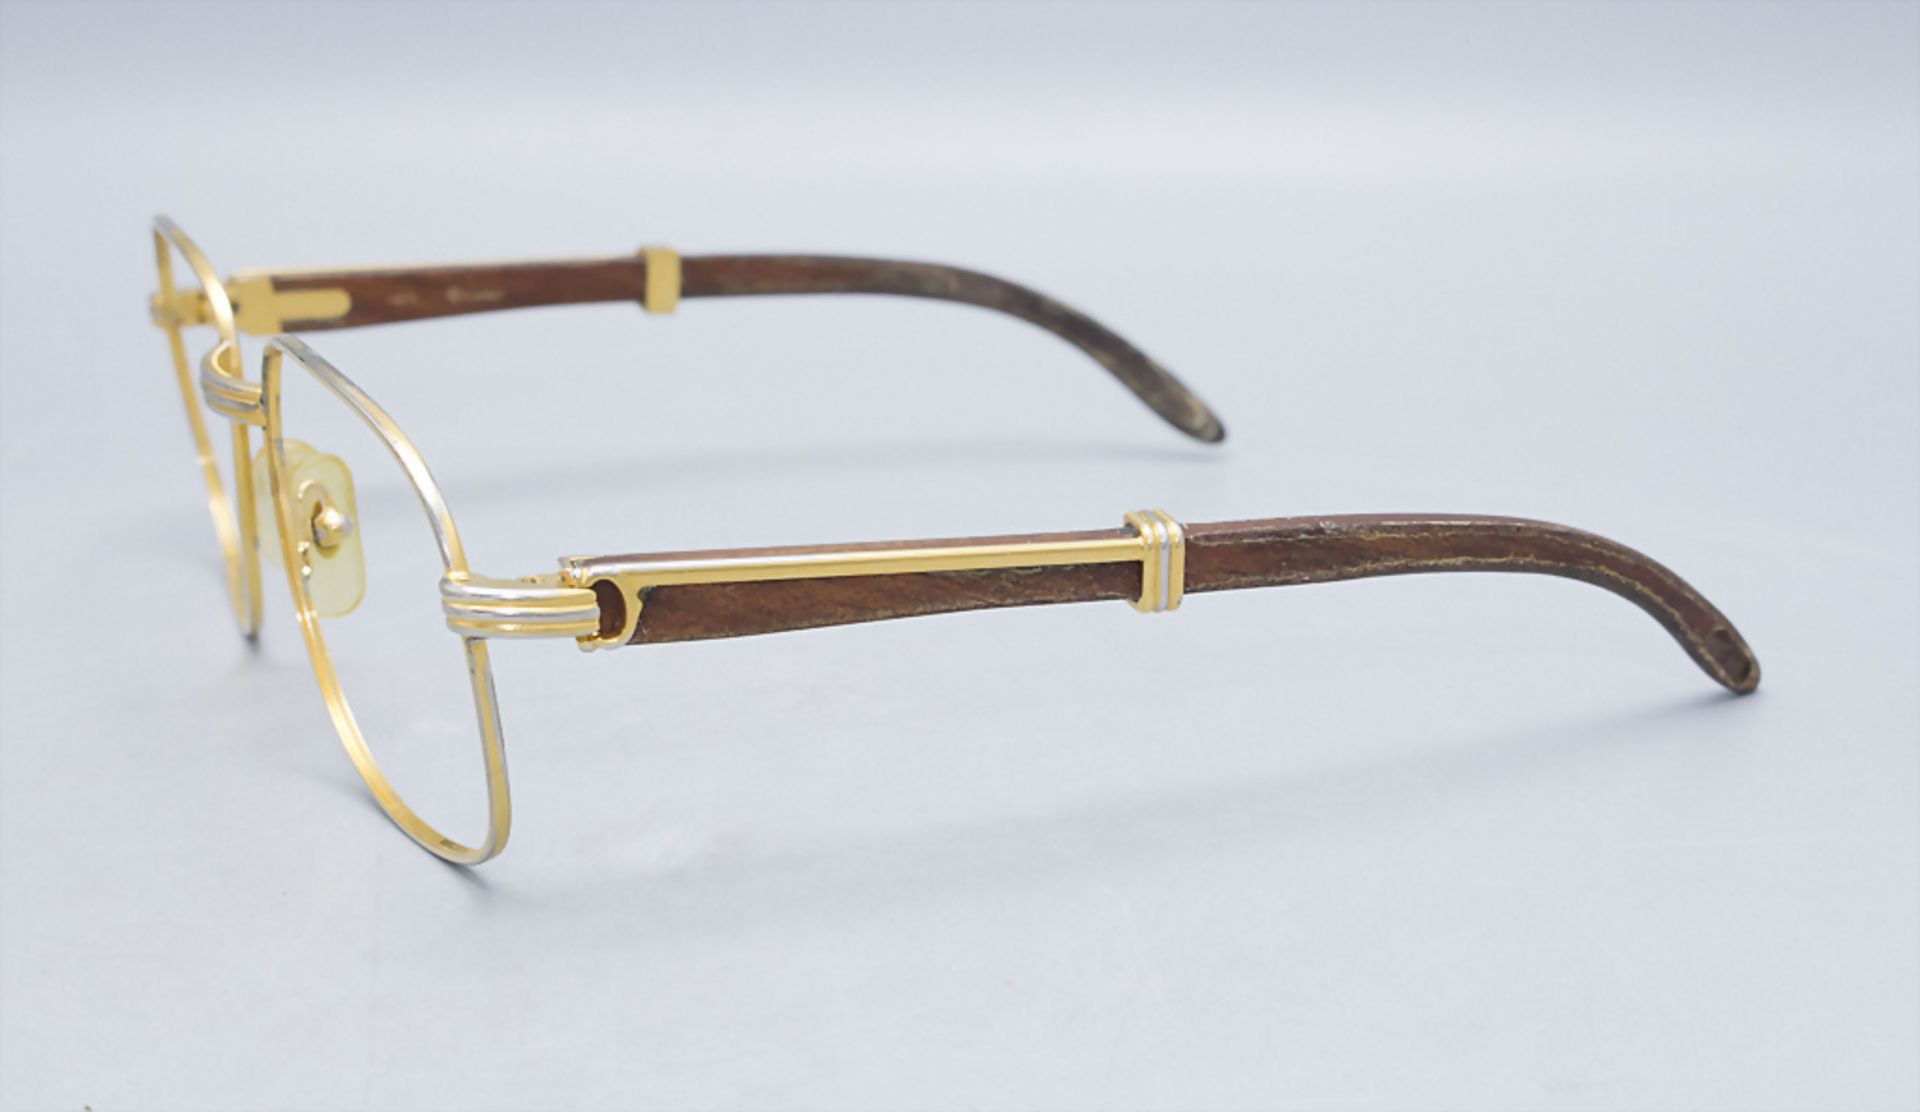 Brille / Lesebrille / Reading glasses, Cartier, Paris, um 1970 - Bild 3 aus 3